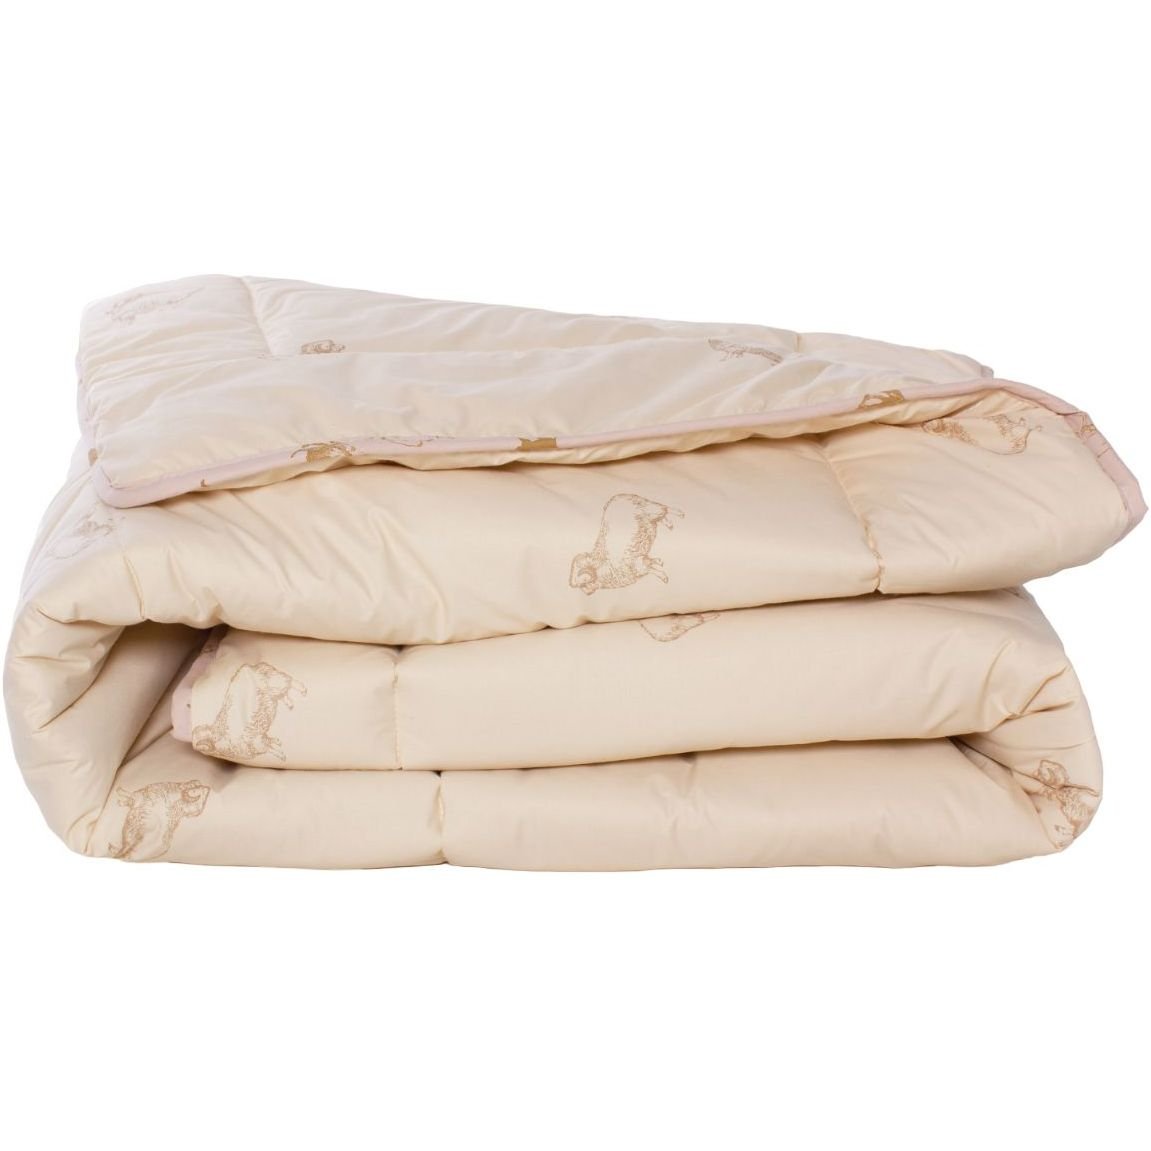 Одеяло шерстяное MirSon Gold Camel №024, зимнее, 200x220 см, кремовое - фото 1